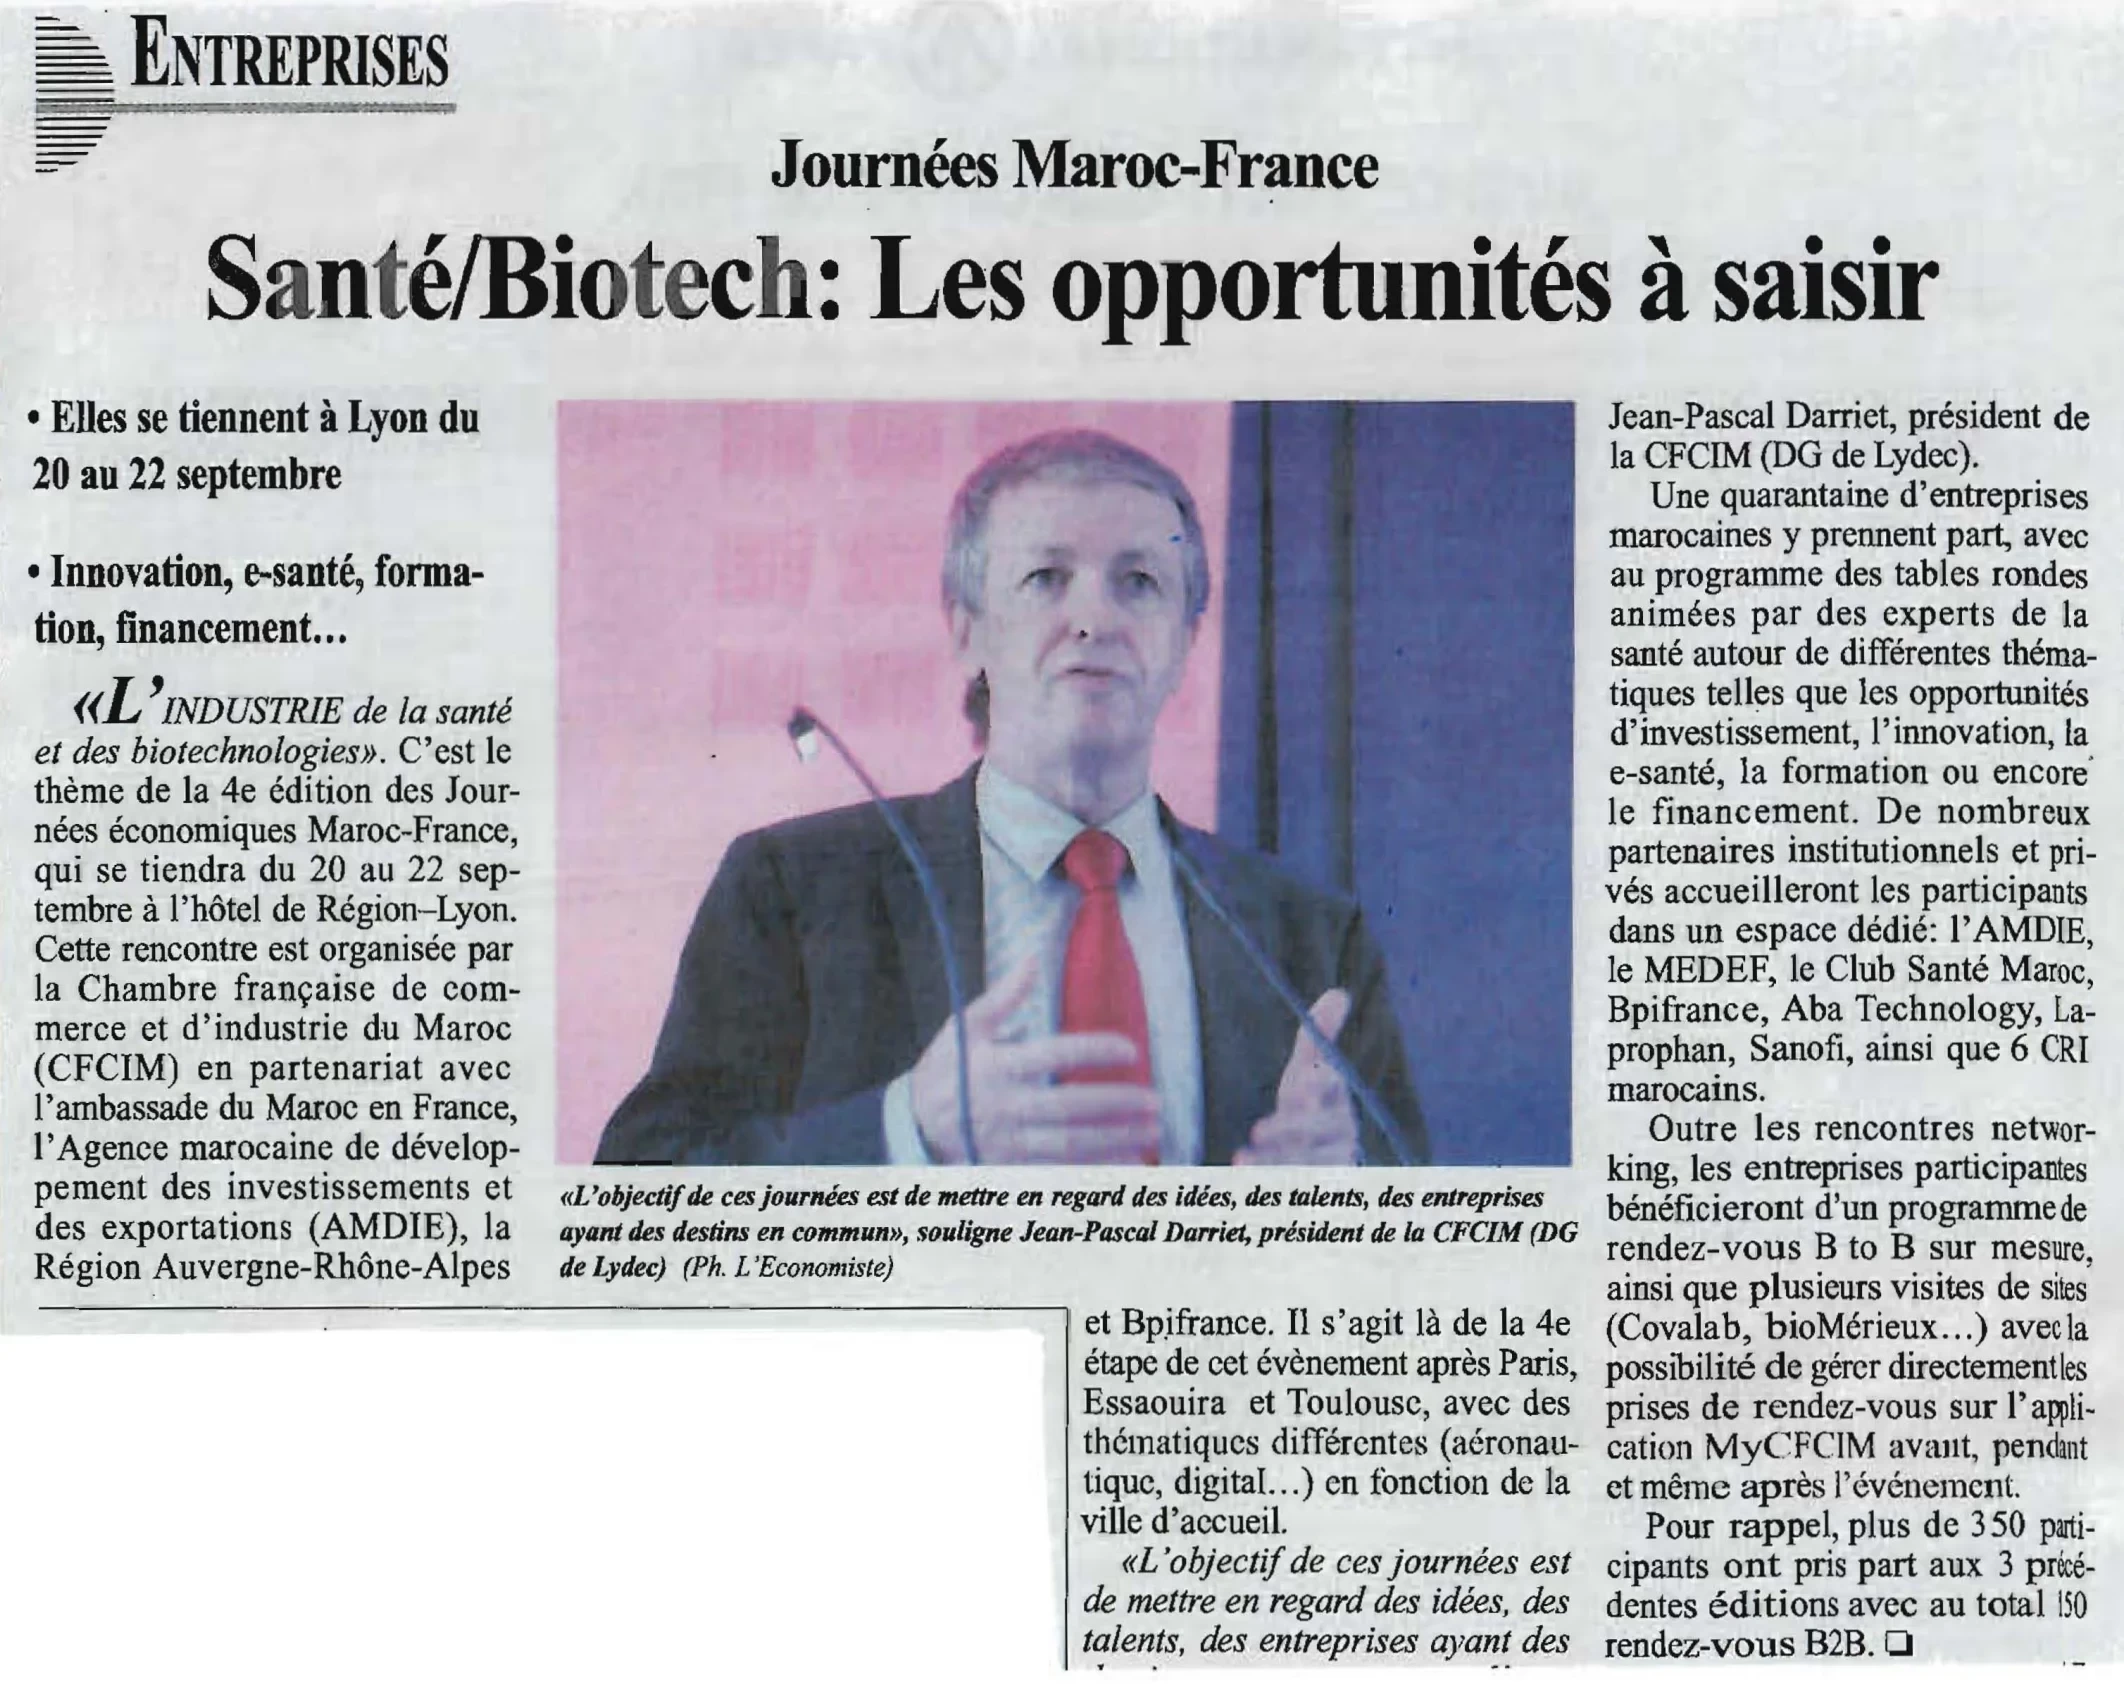 Participation des Laboratoires LAPROPHAN en tant que Sponsor Platinium à la 4ème étape des Journées économiques Maroc-France qui se dérouleront à Lyon du 20 au 22 septembre sous le thème "L'industrie de la santé et des biotechnologies"